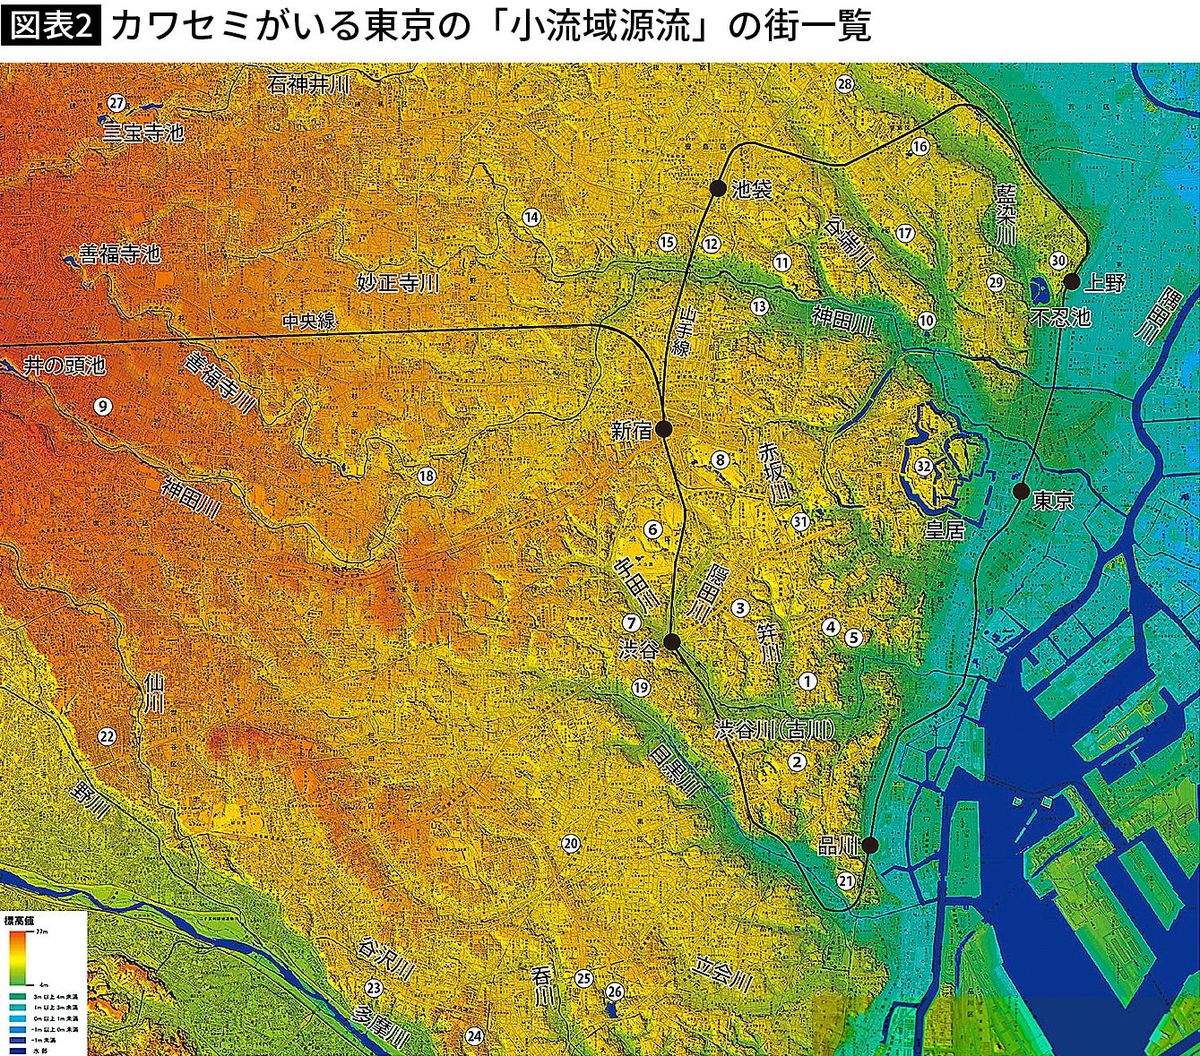 【図表】カワセミがいる東京の「小流域源流」の街一覧